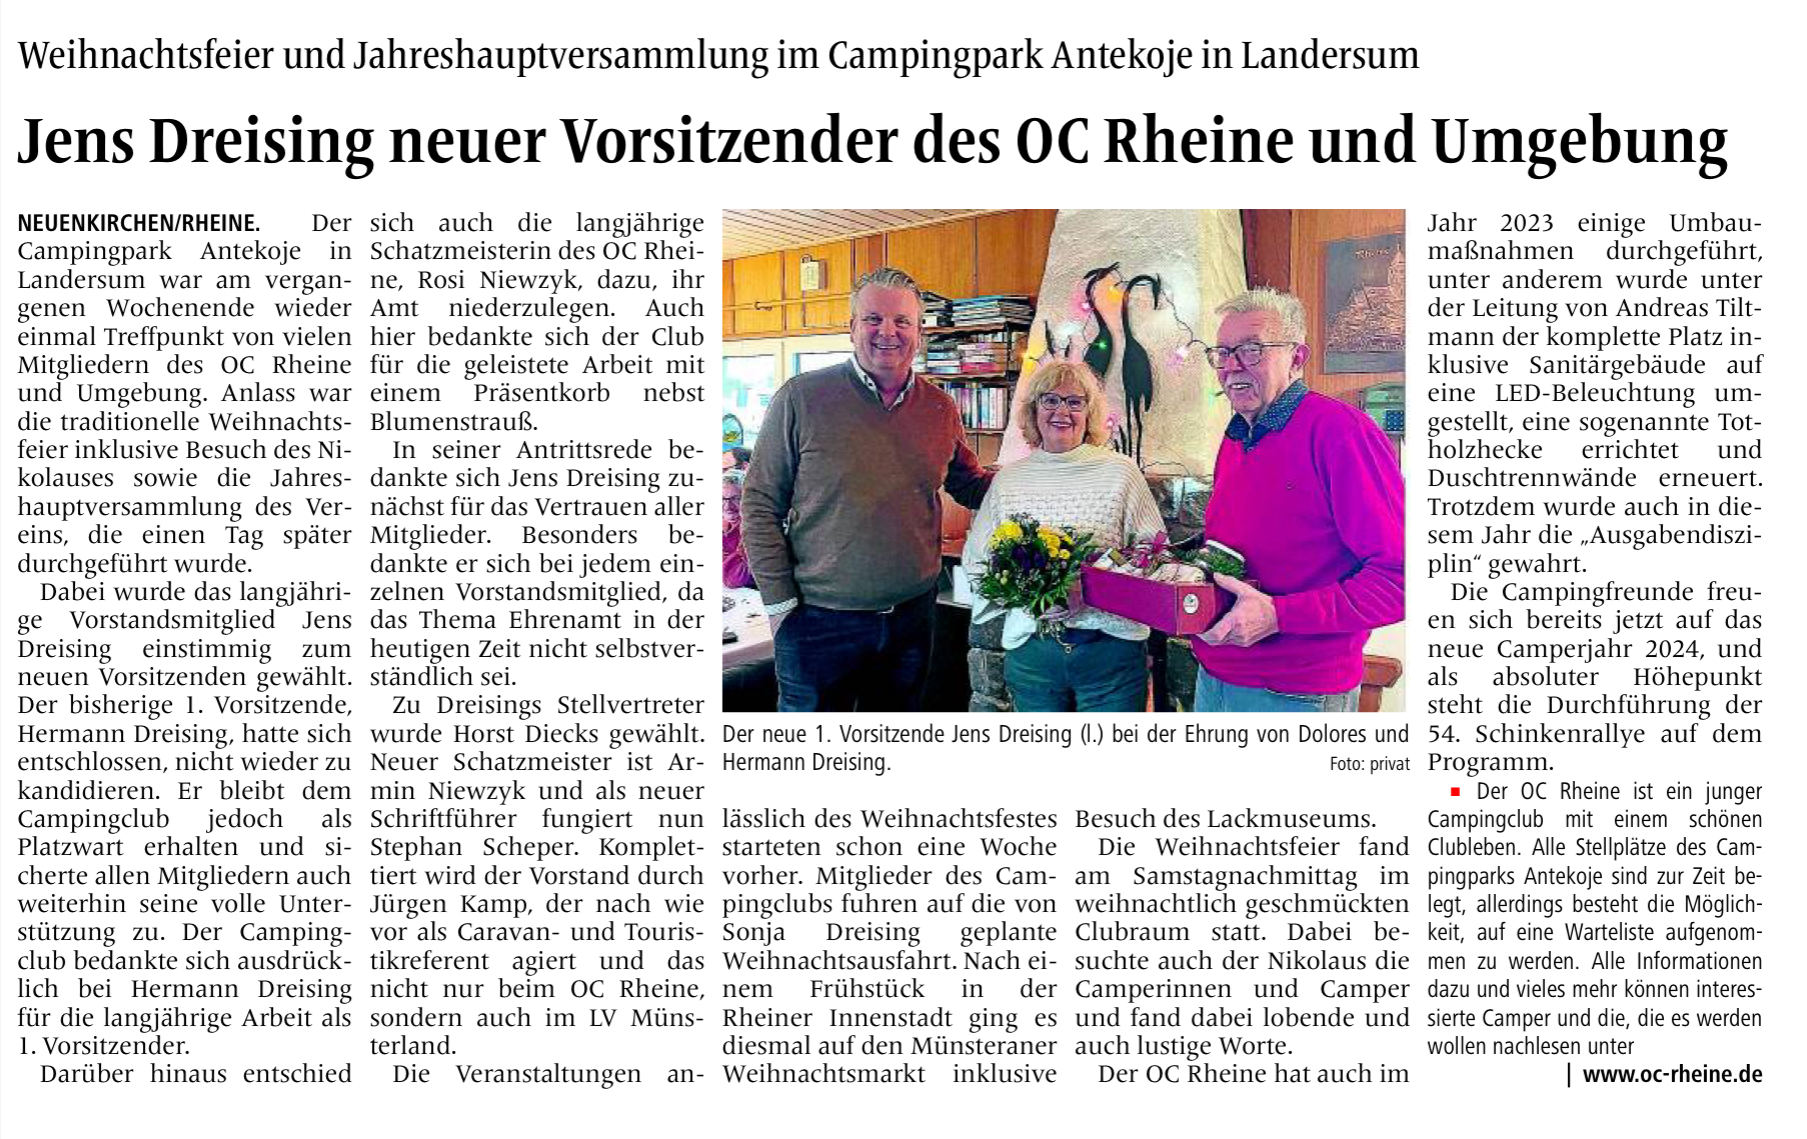 Jens Dreising neuer Vorsitzender des OC Rheine und Umgebung